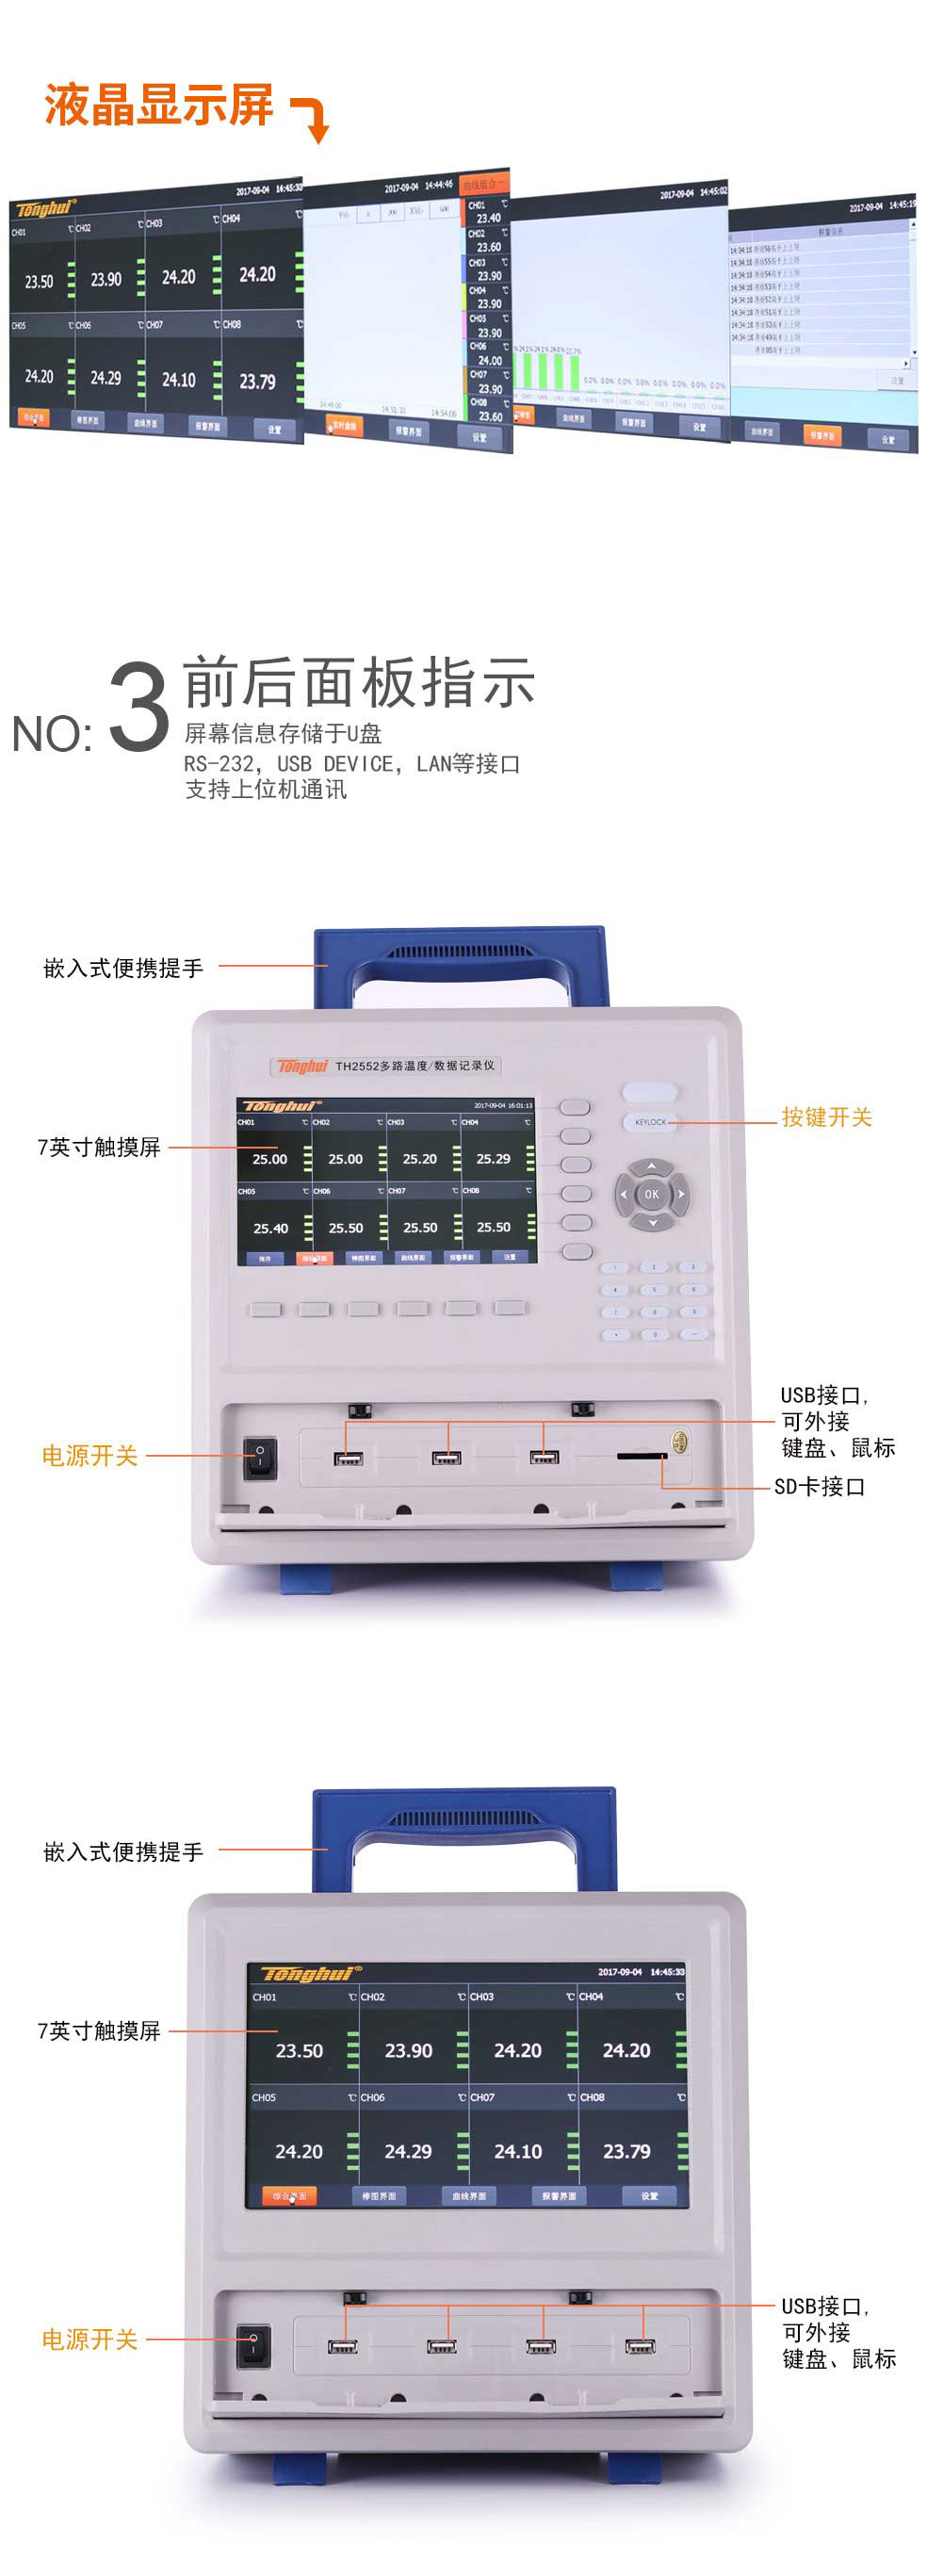 同惠(Tonghui)TH2552多路温度数据测试仪数据巡检仪记录仪7英寸彩